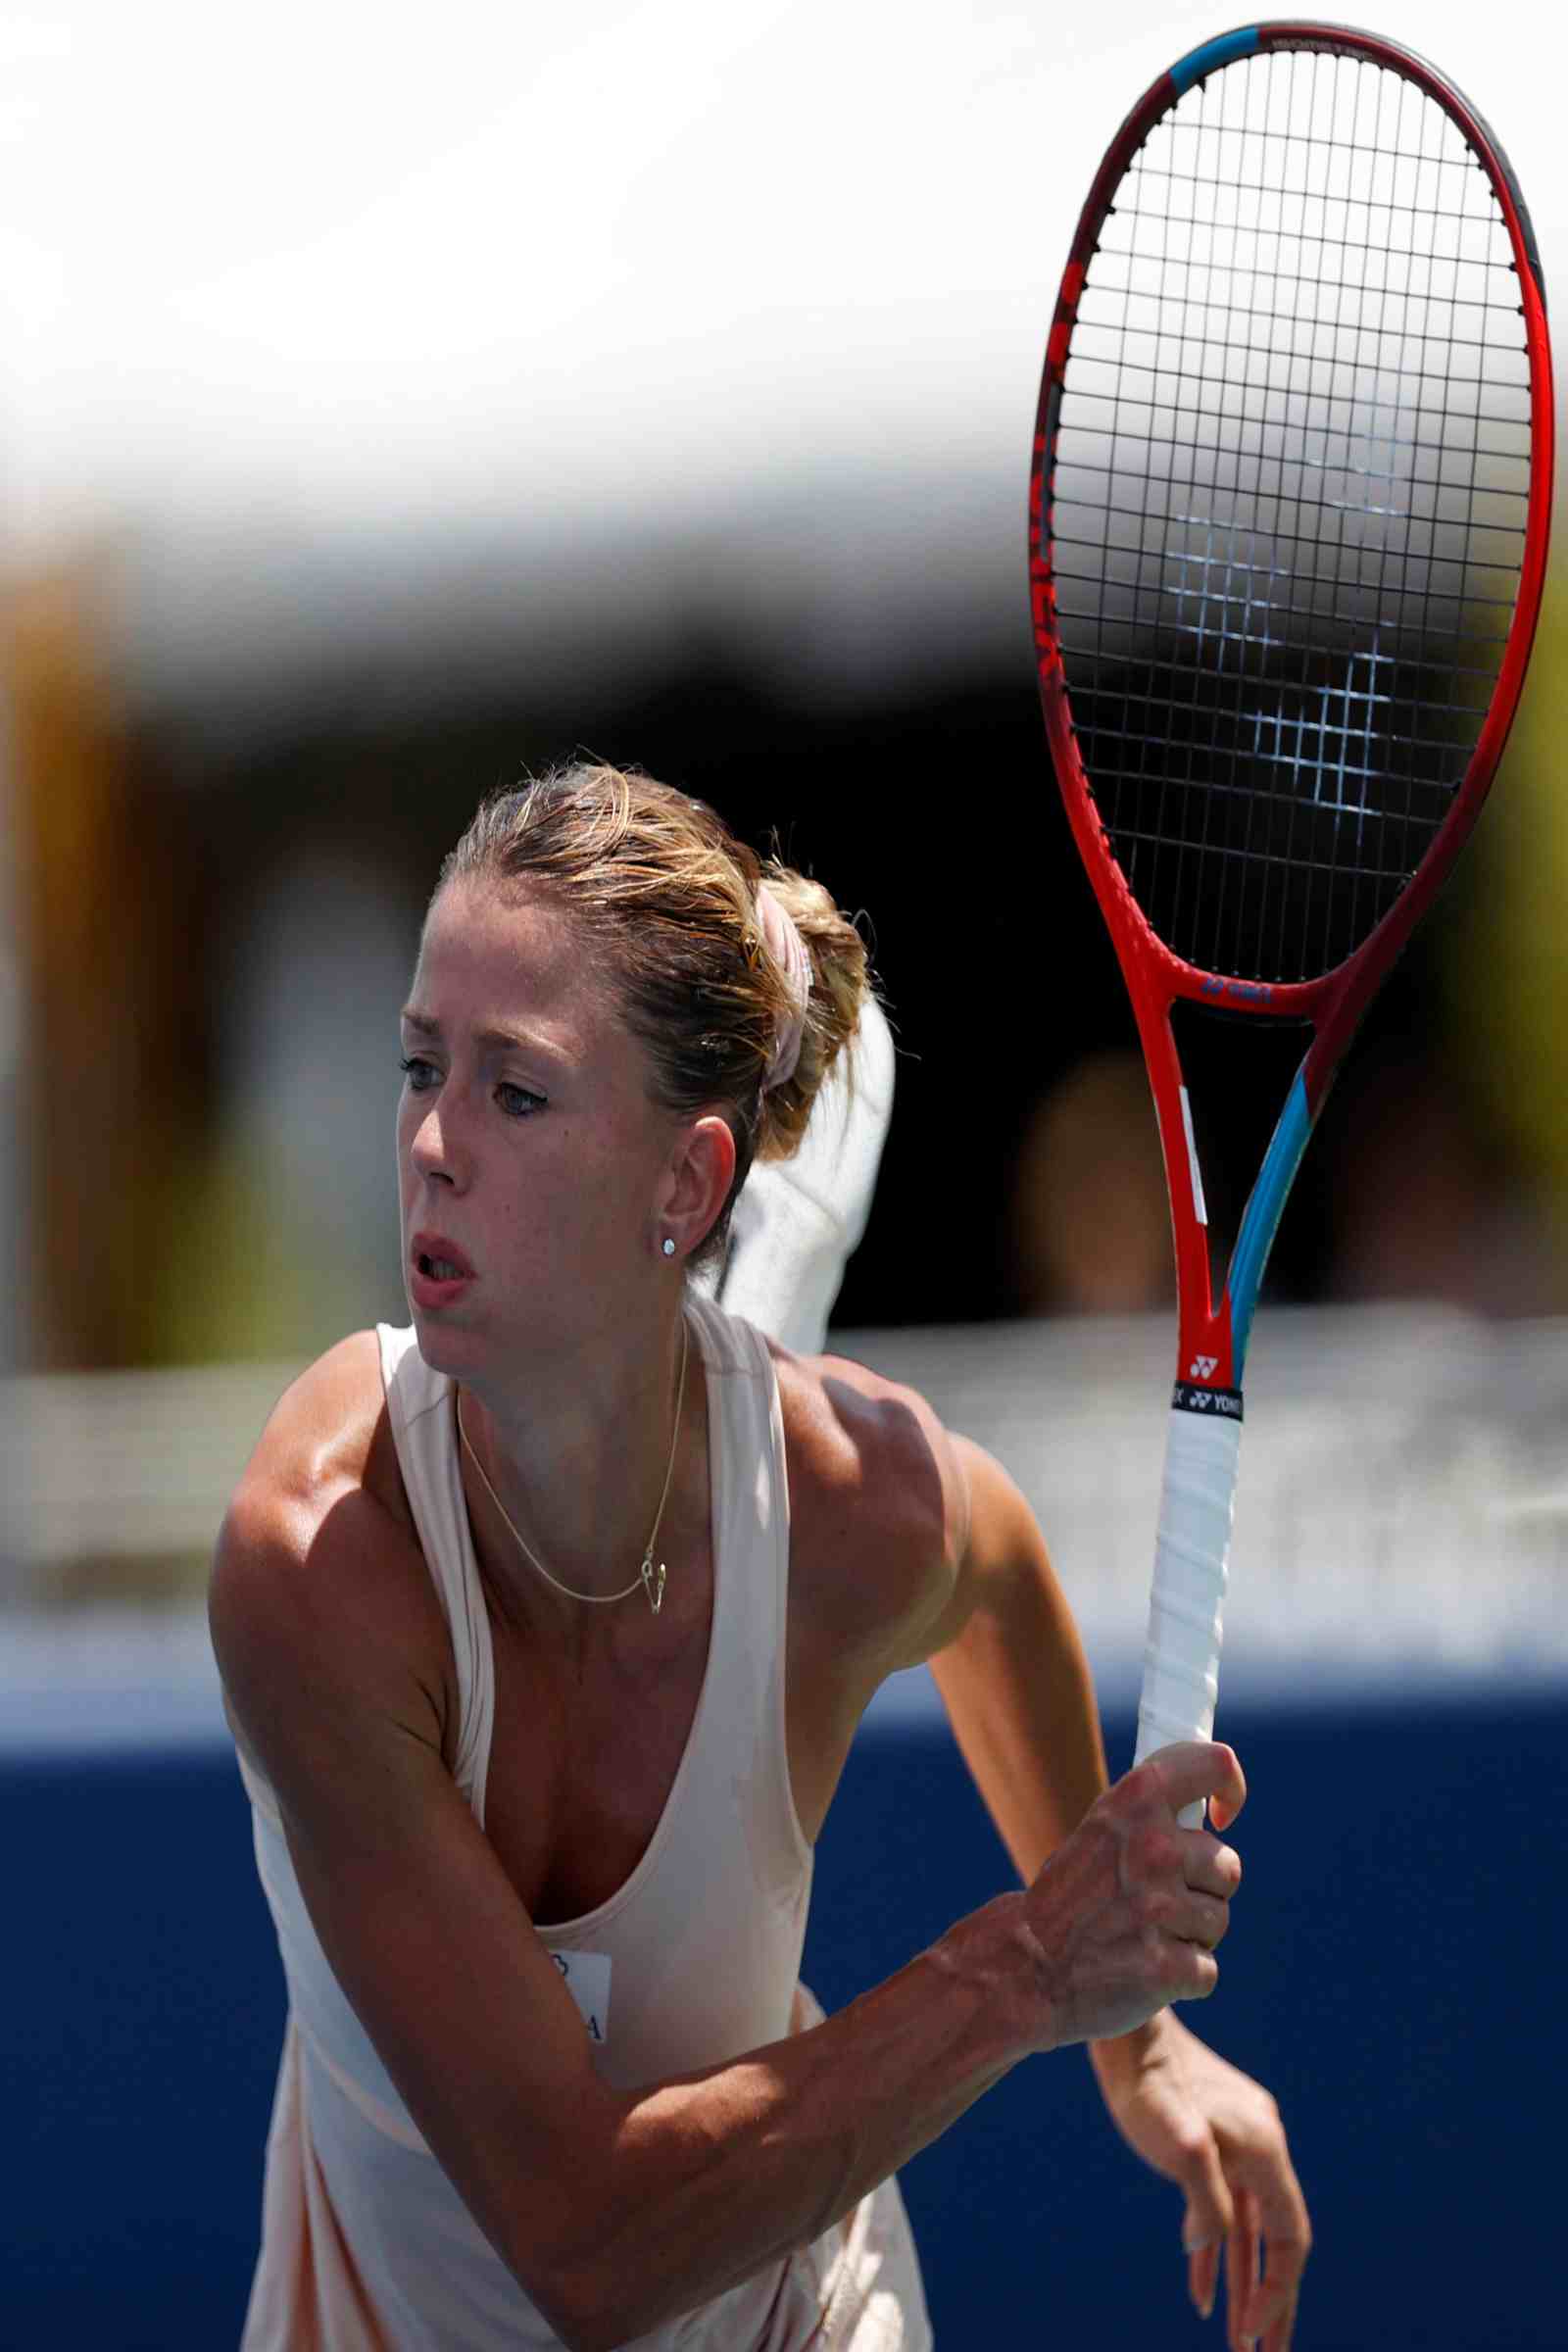 Camila Giorgi tennis